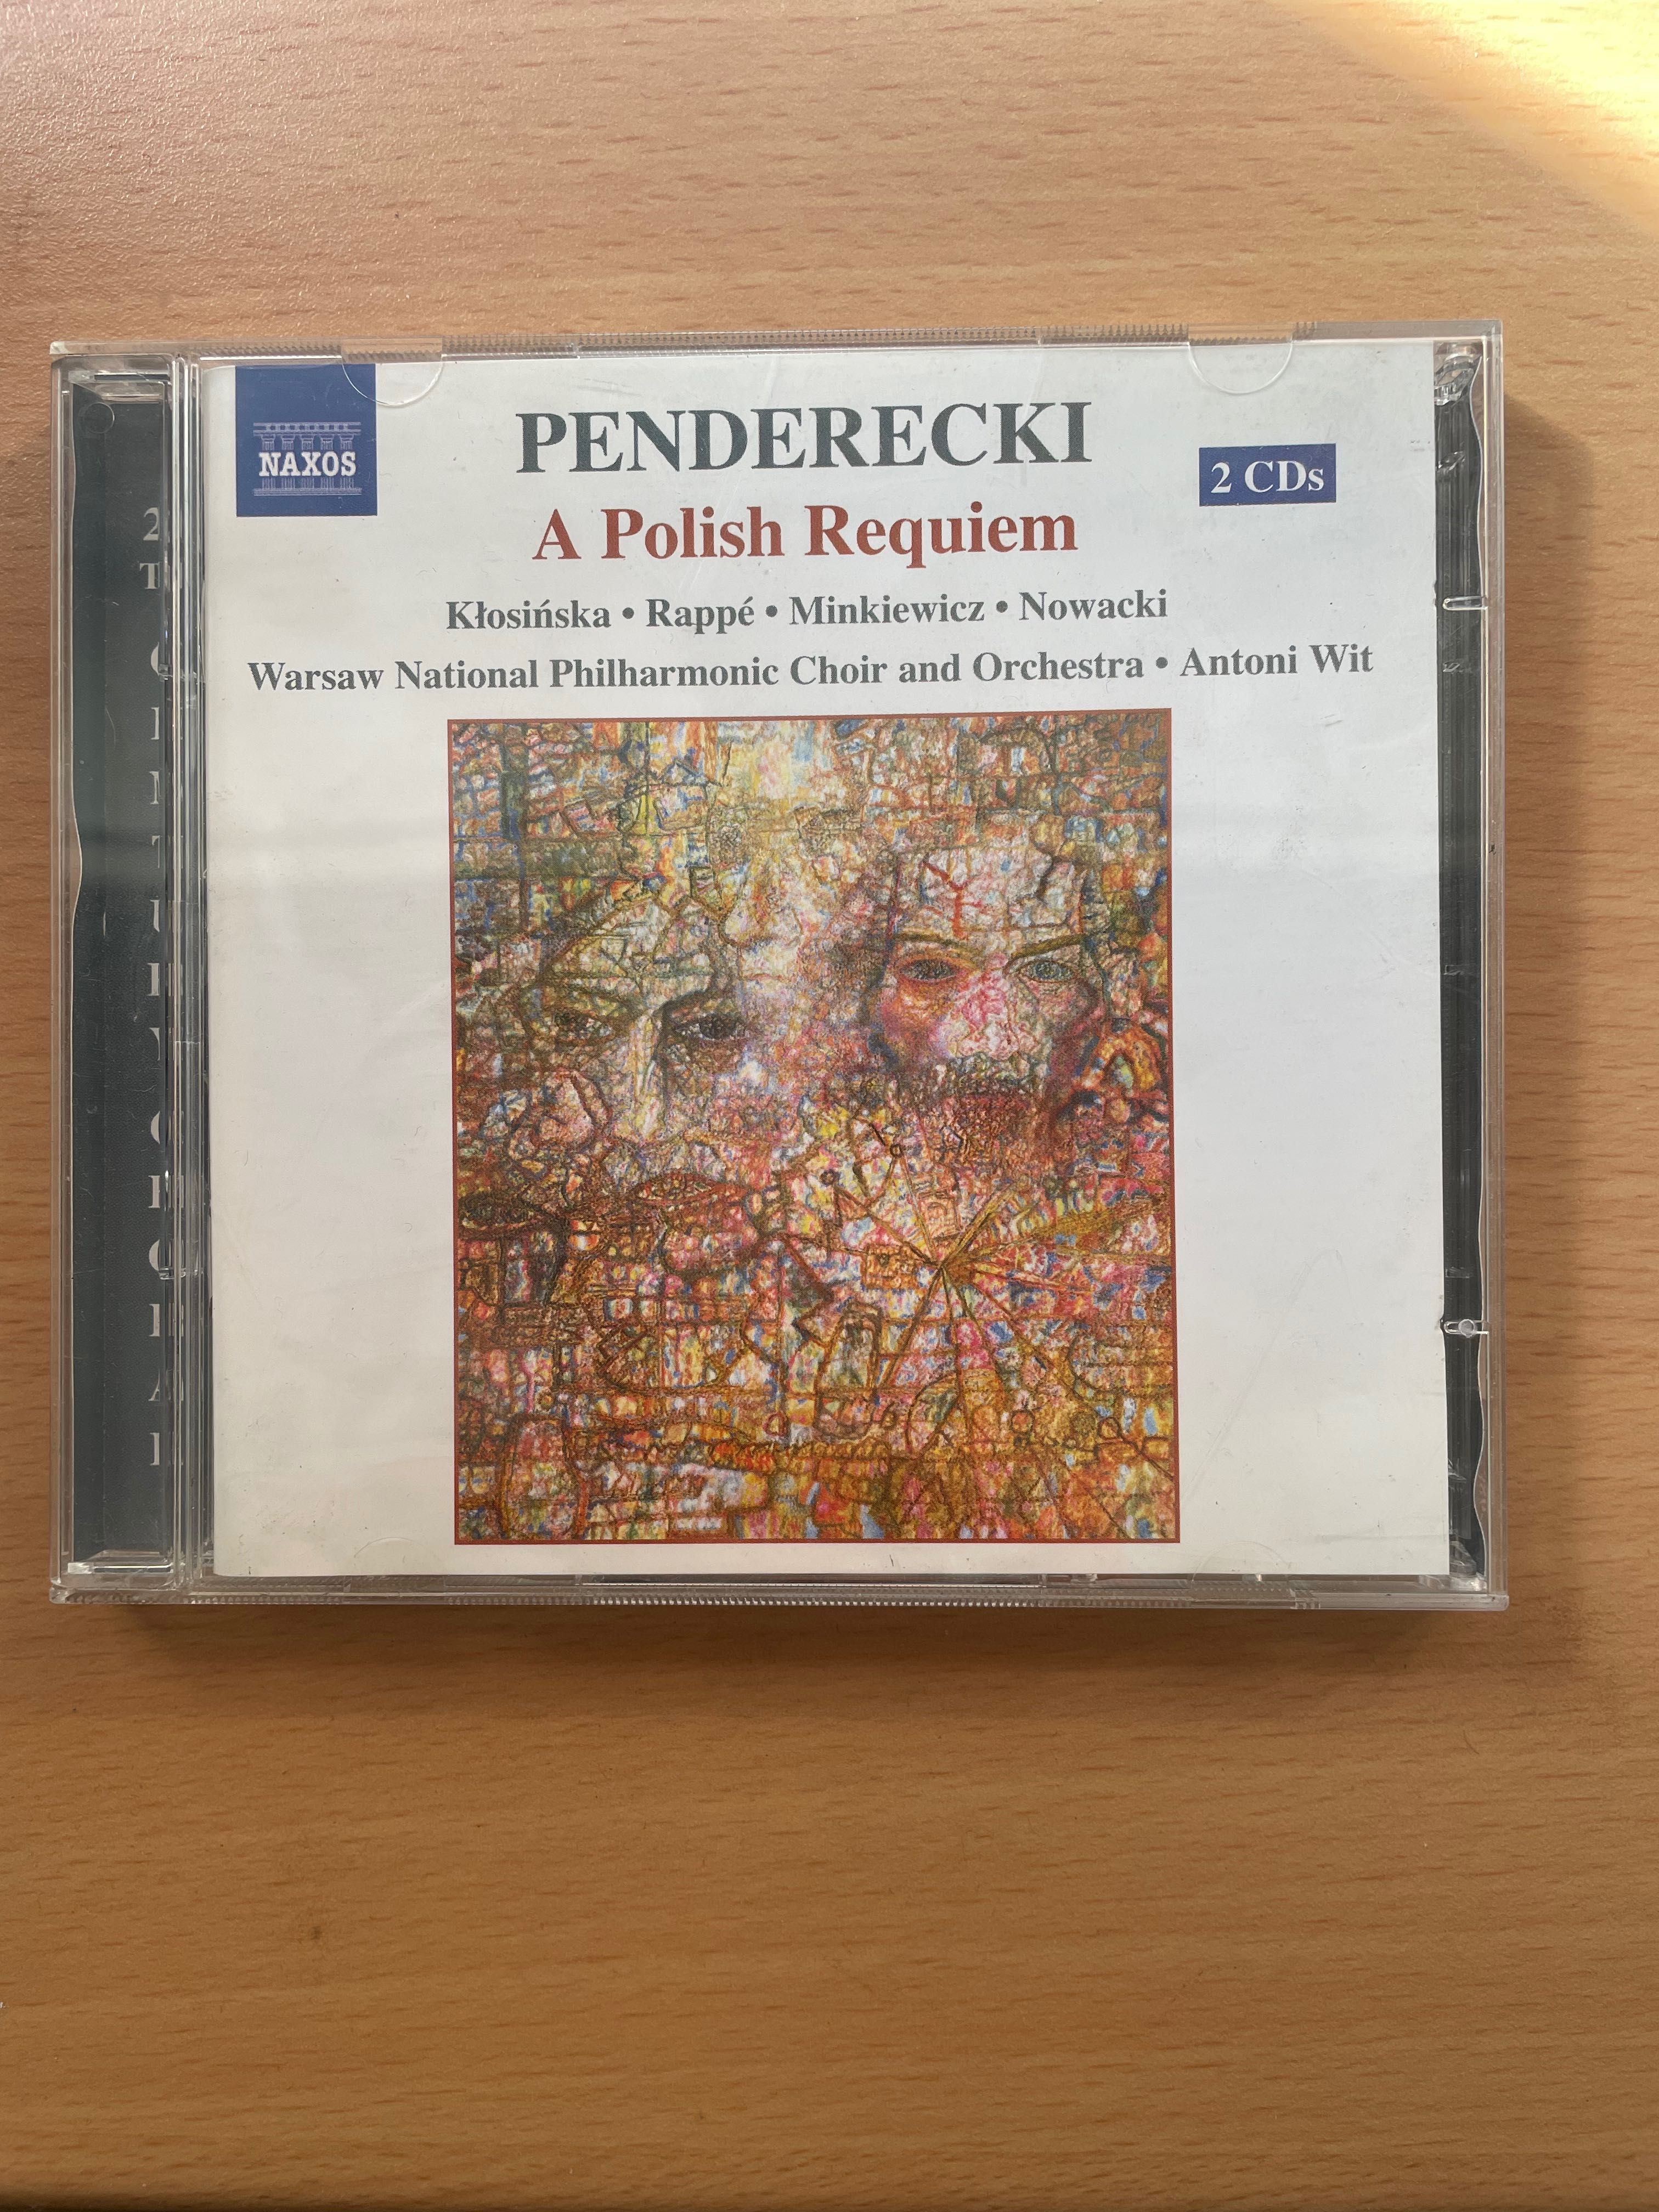 CD duplo Penderecki: A polish requiem